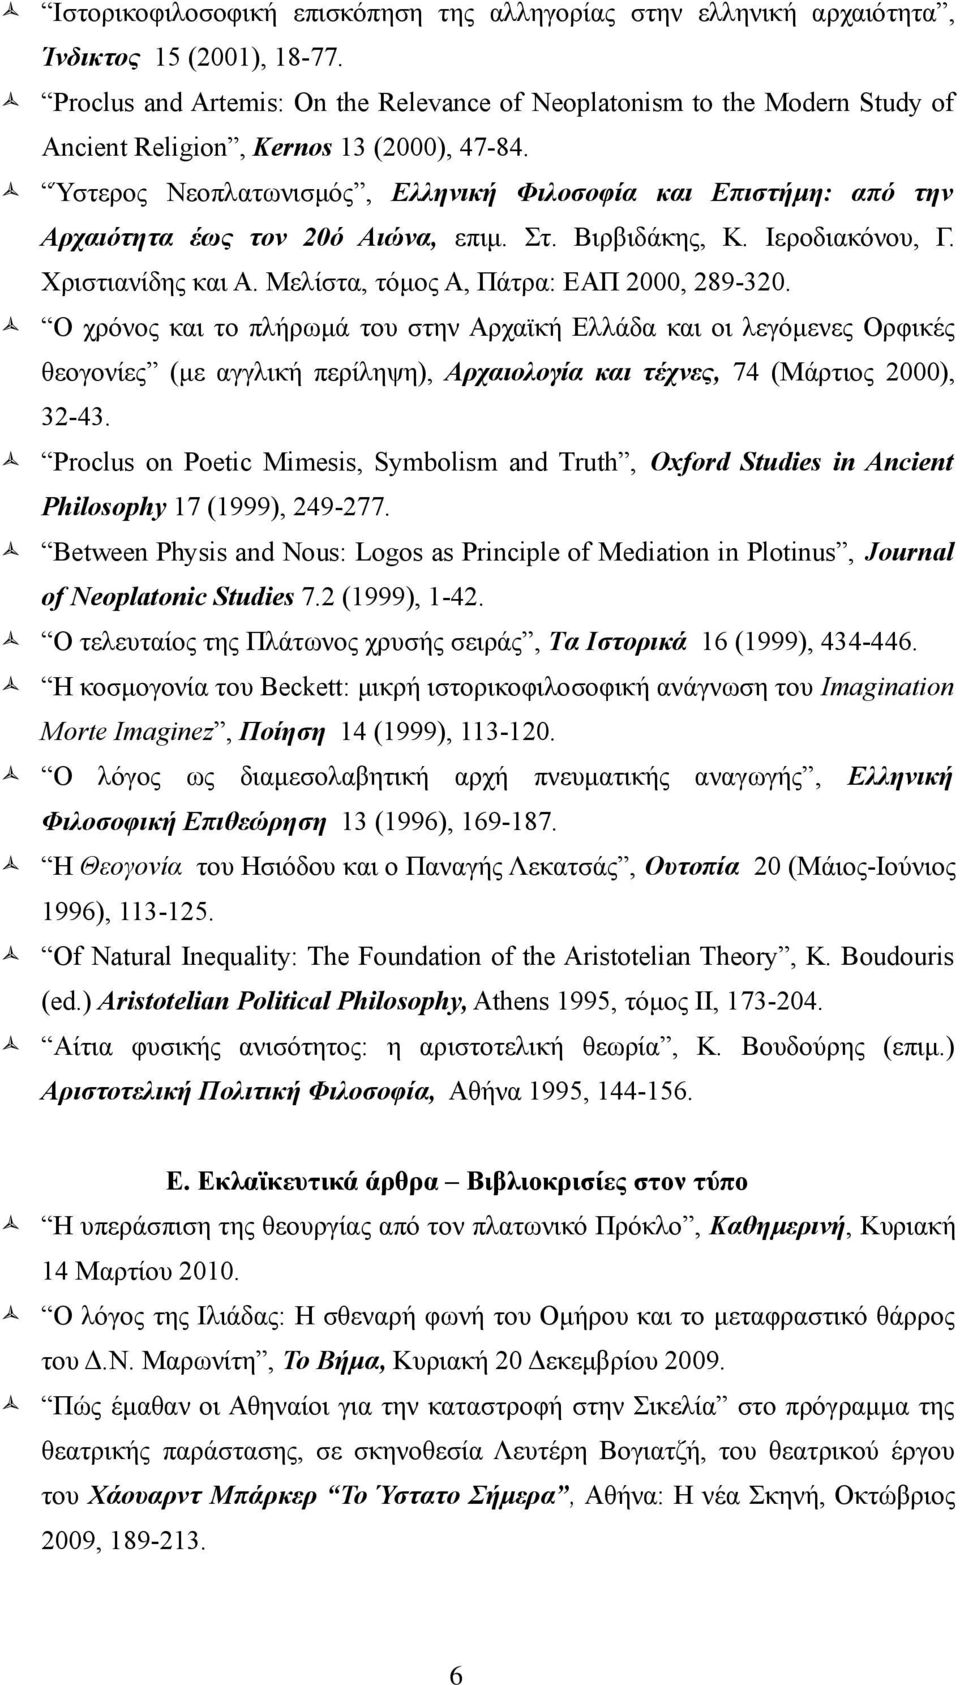 Ύστερος Nεοπλατωνισμός, Eλληνική Φιλοσοφία και Eπιστήμη: από την Aρχαιότητα έως τον 20ό Aιώνα, επιμ. Στ. Bιρβιδάκης, K. Iεροδιακόνου, Γ. Xριστιανίδης και A. Mελίστα, τόμος A, Πάτρα: EAΠ 2000, 289-320.